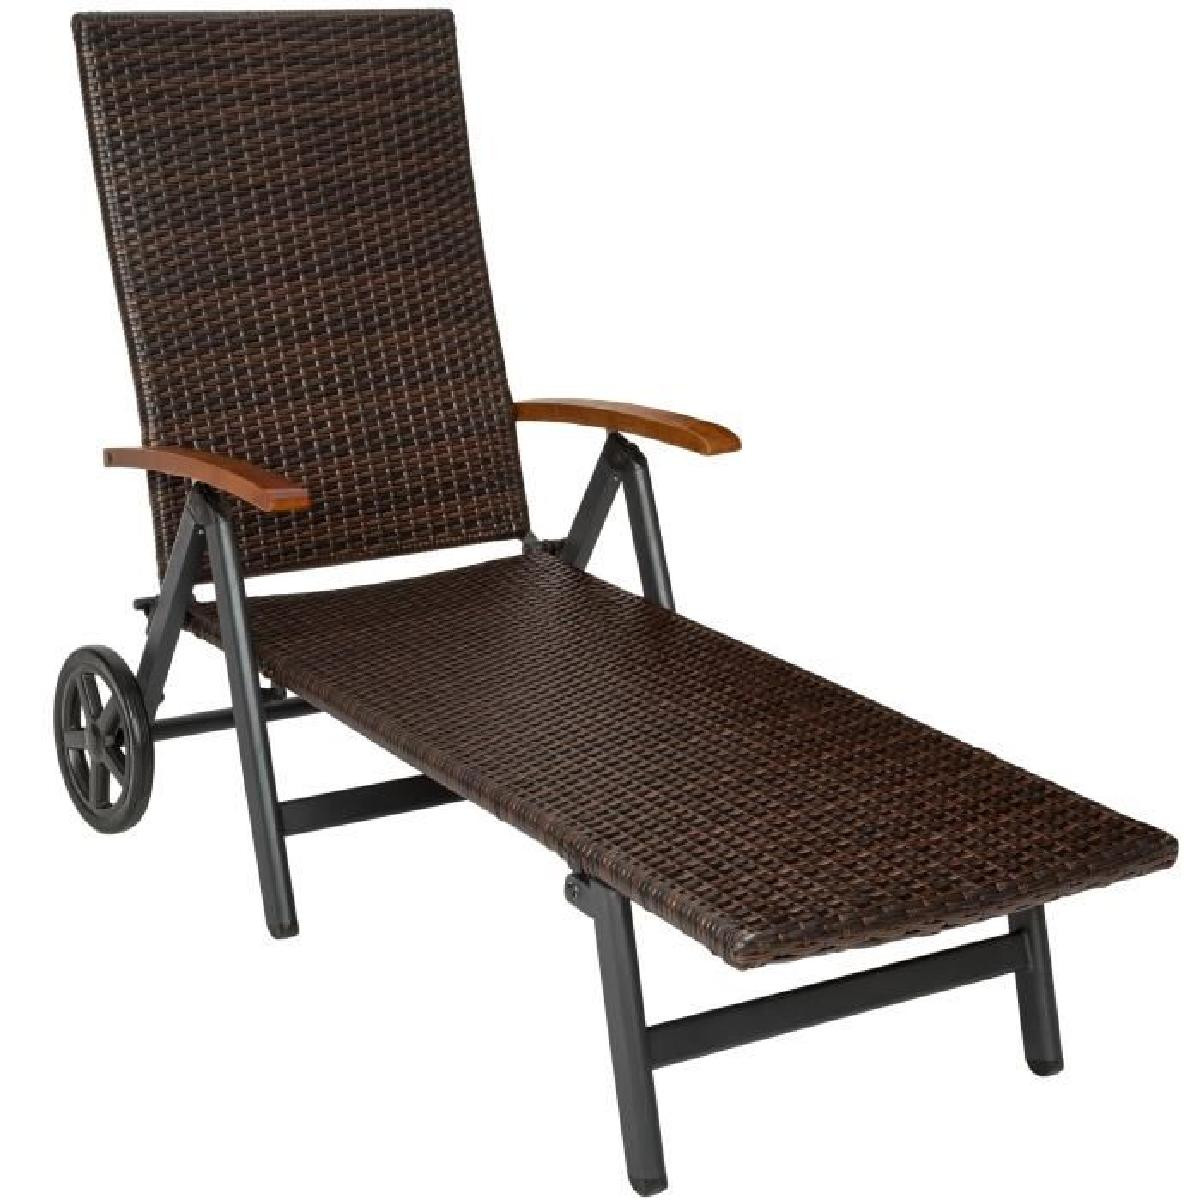 chaise longue bain de soleil transat de jardin pliante r glable en aluminium et r sine tress e